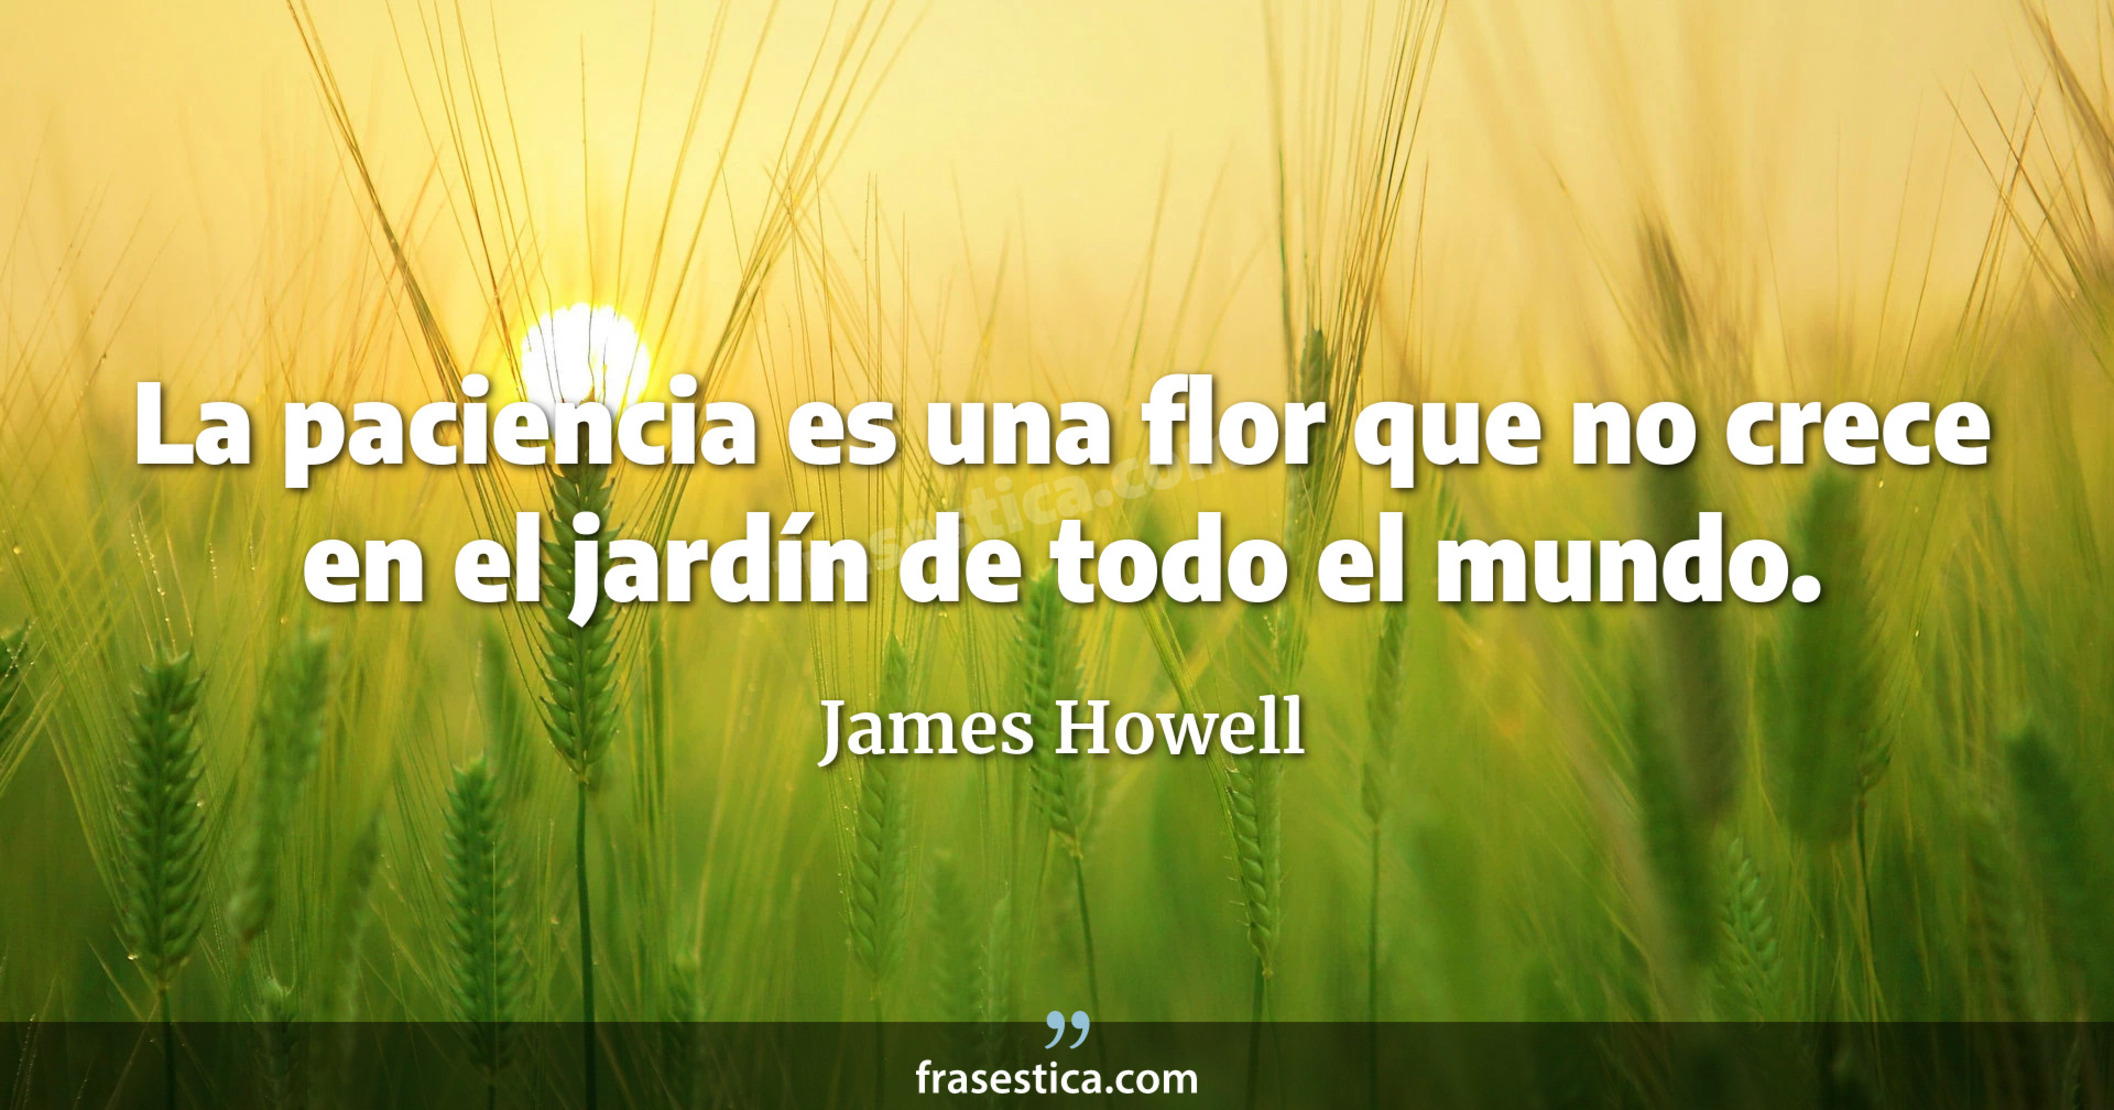 La paciencia es una flor que no crece en el jardín de todo el mundo. - James Howell